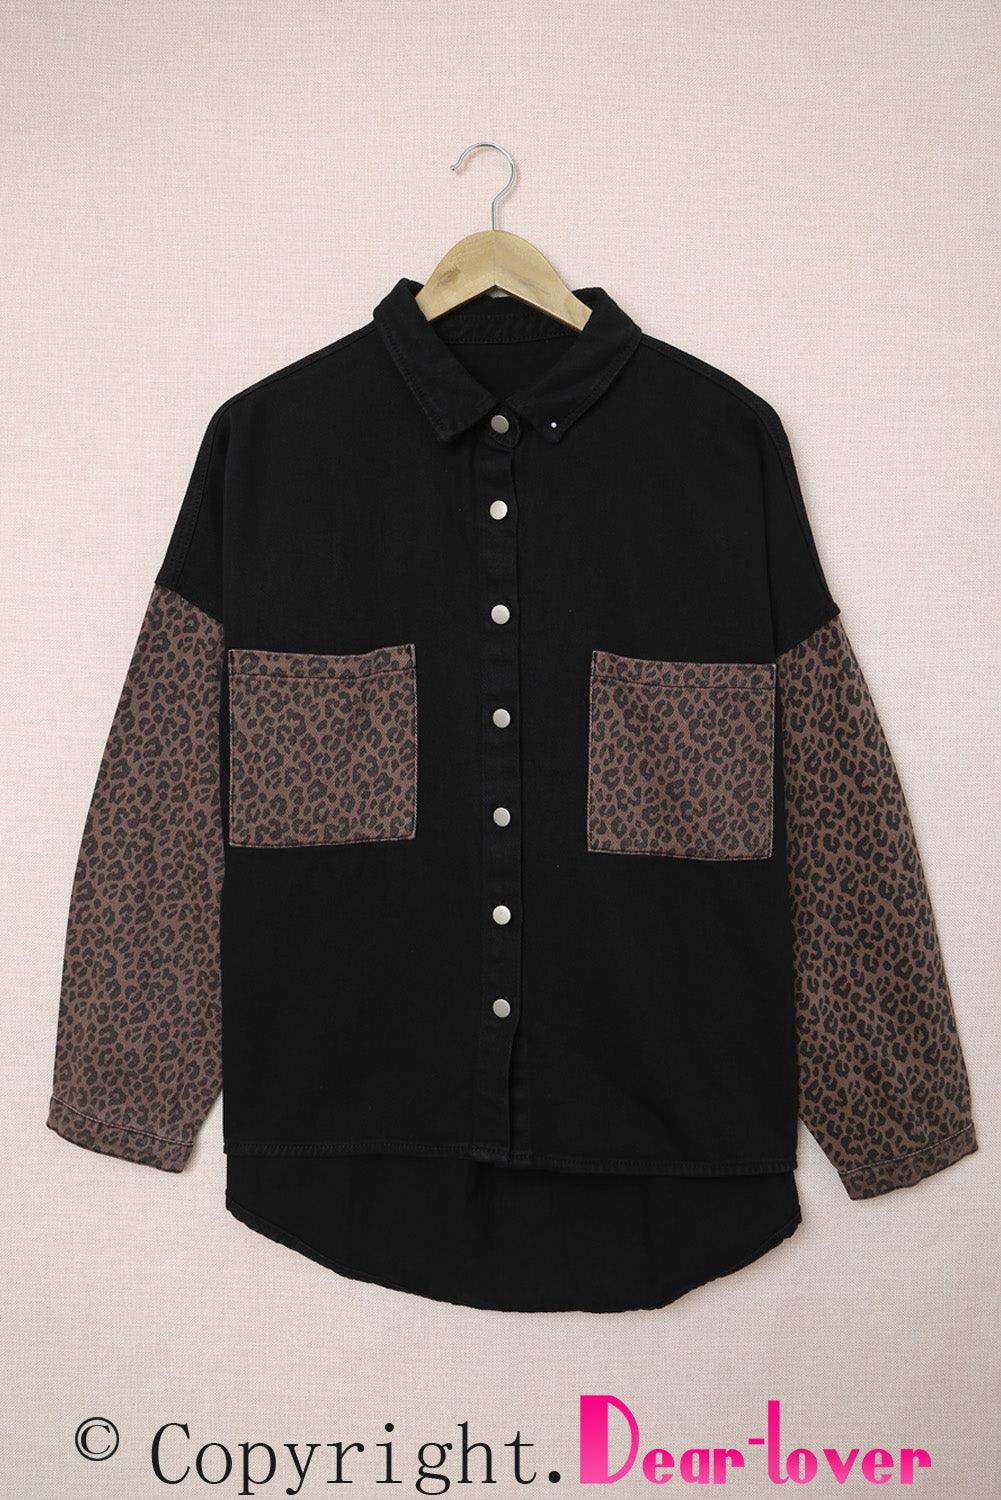 Blank Apparel - Black Contrast Leopard Denim Jacket - L & M Kee, LLC